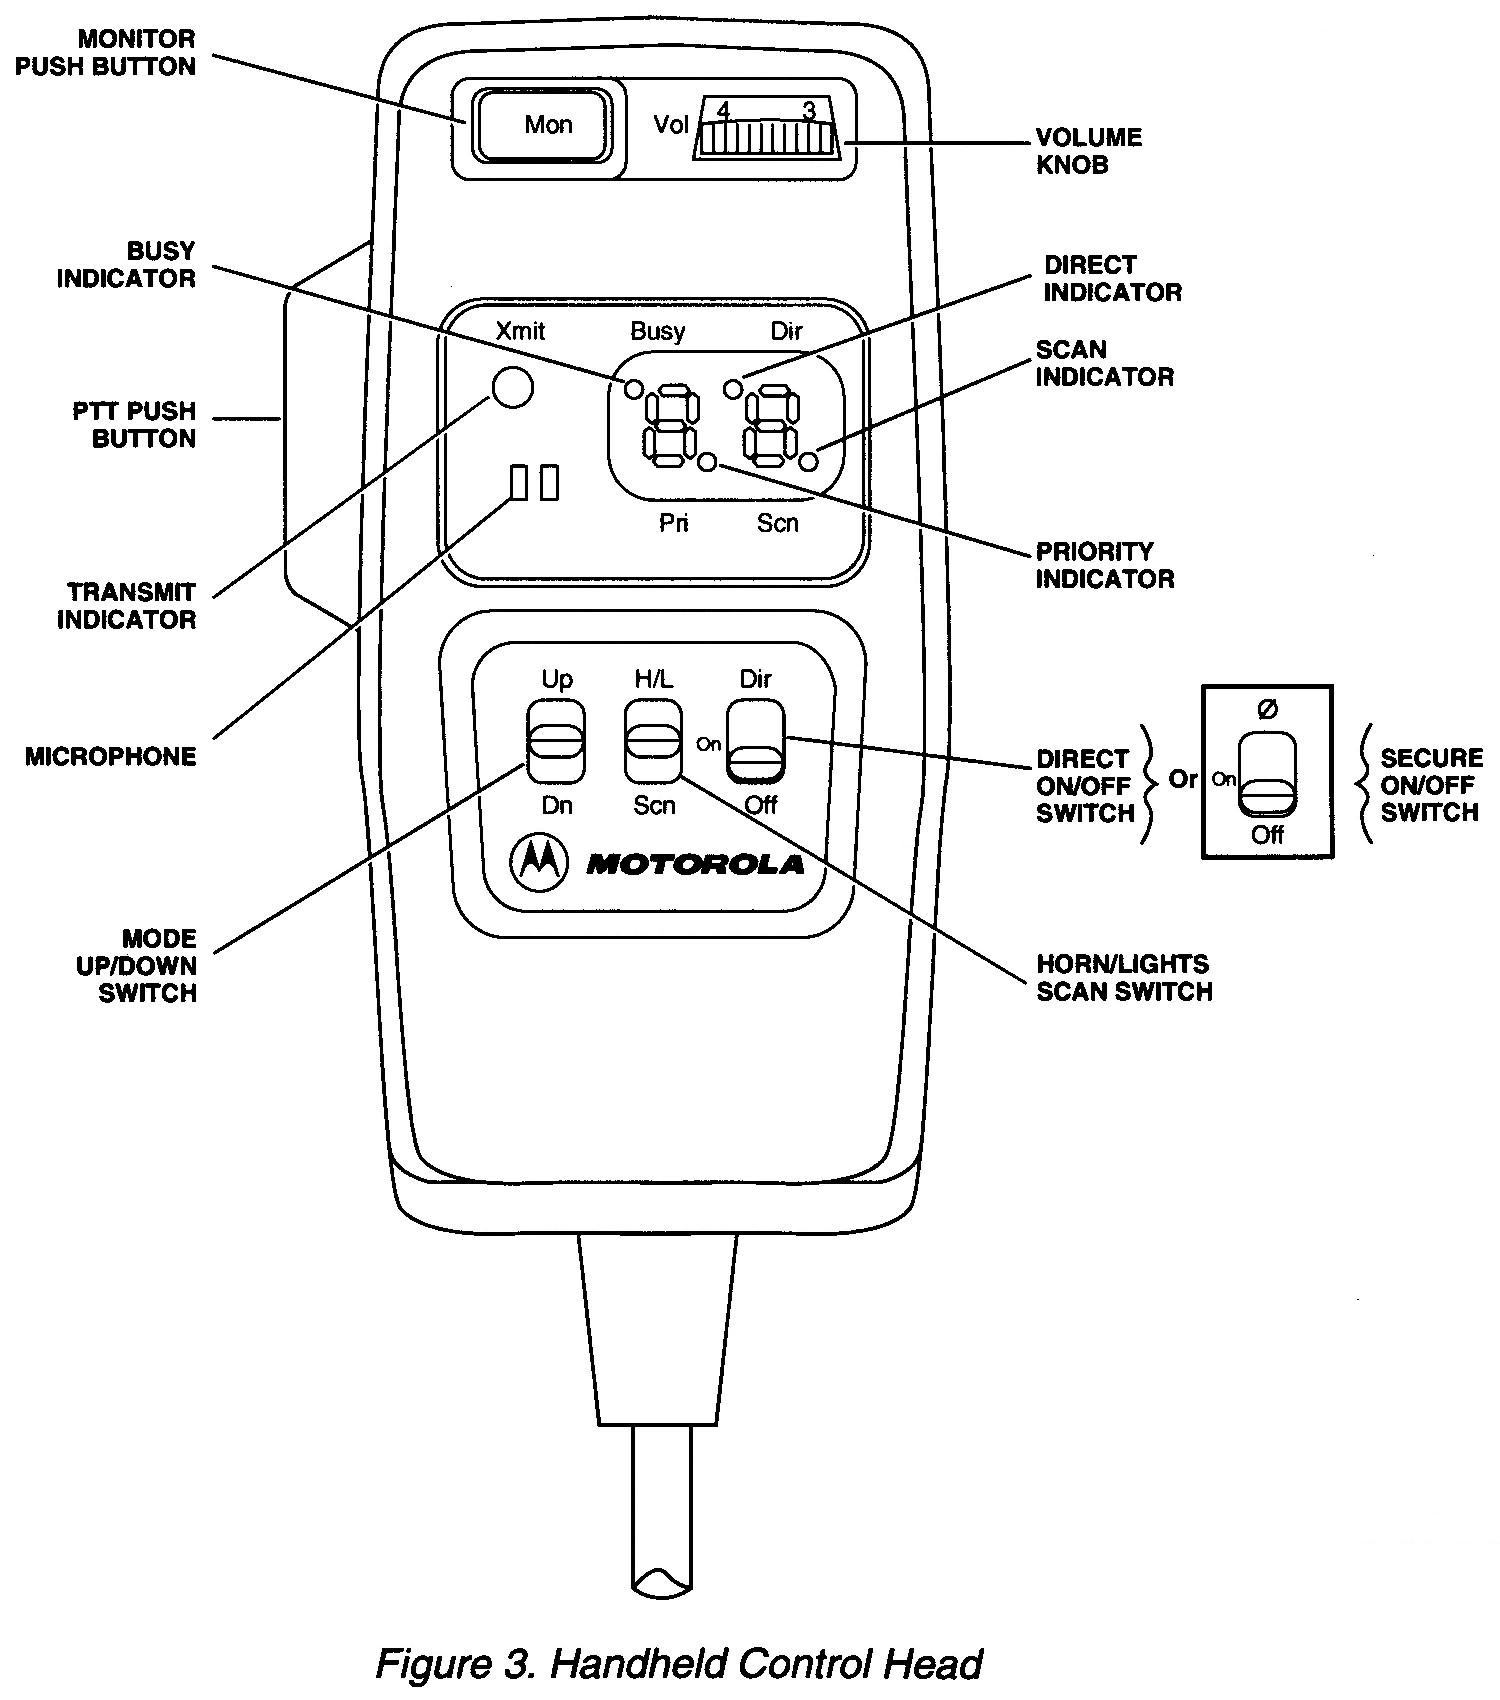 Motorola Pm1500 Wiring Guide